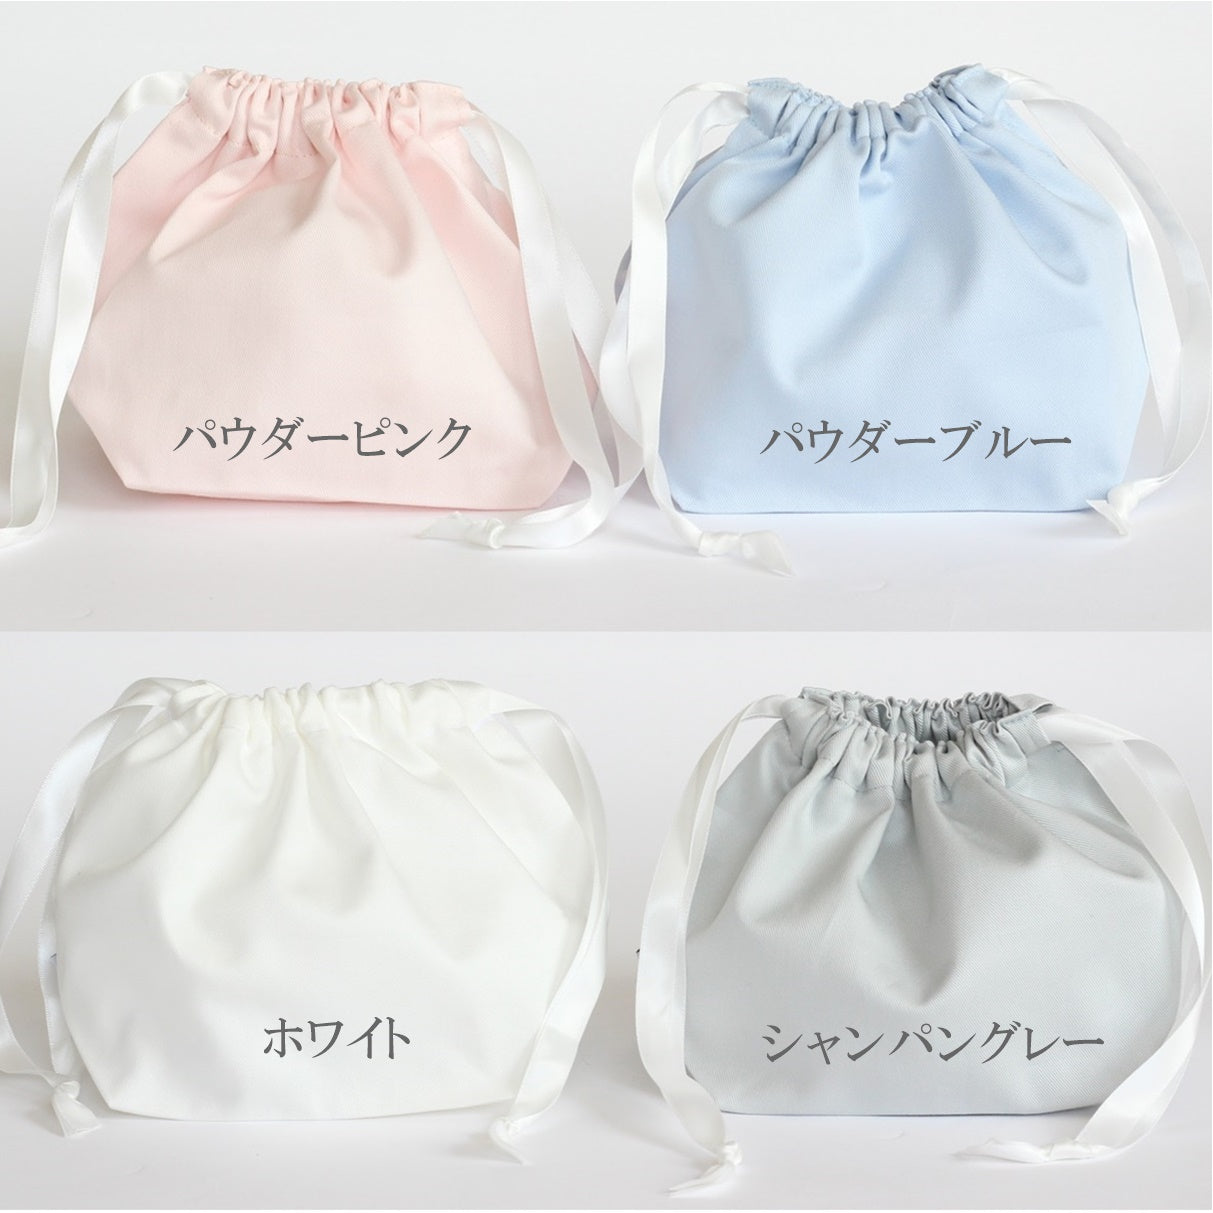 くまちゃんの名入れ巾着袋3種類セット